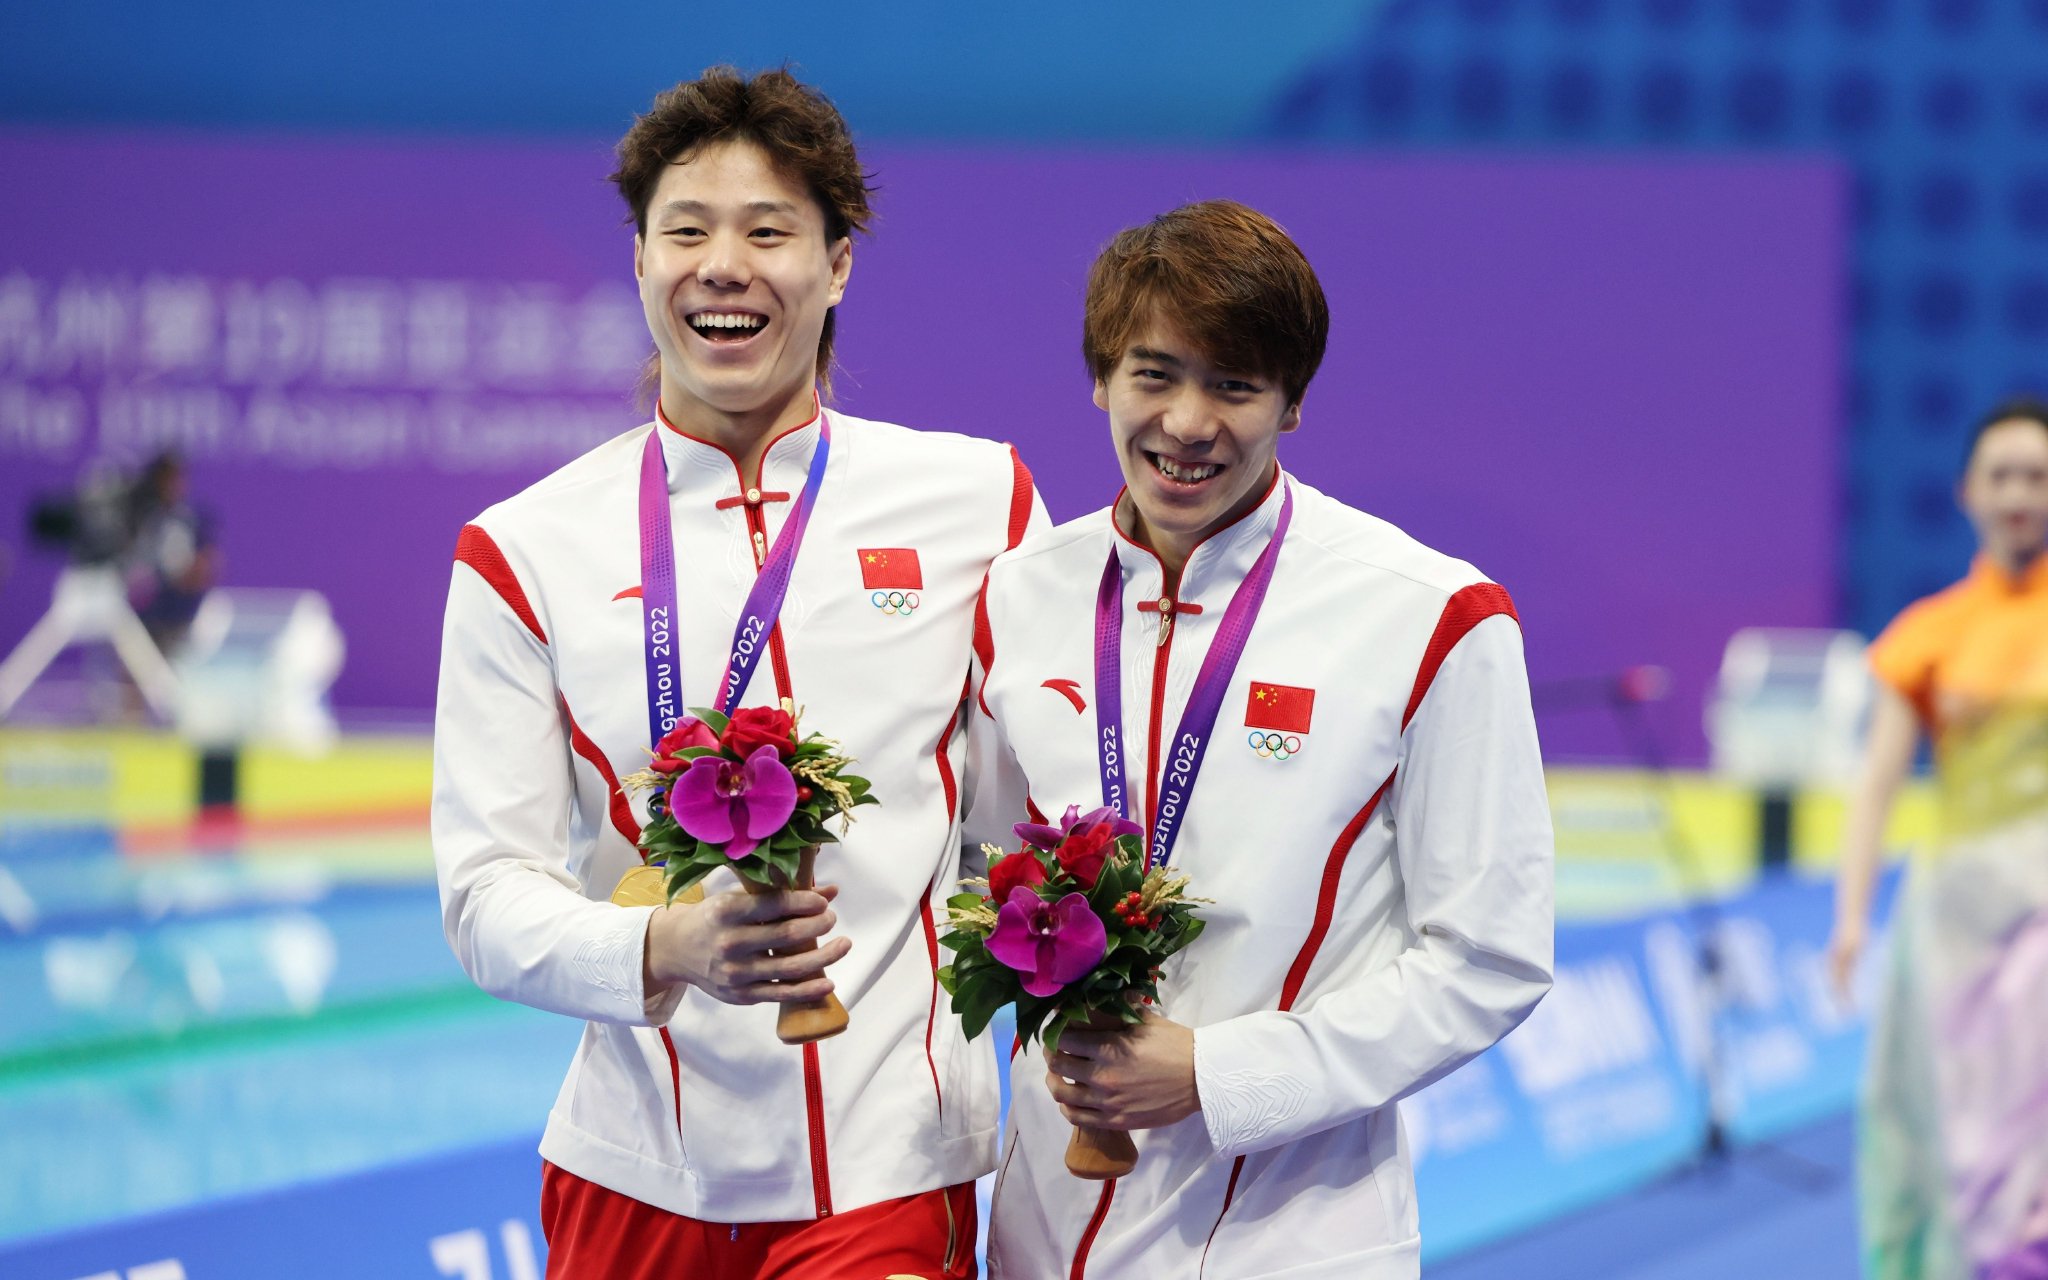 覃海洋（左）、孫佳俊奪得男子50米蛙泳冠、亞軍。 新京報記者 王貴彬 攝